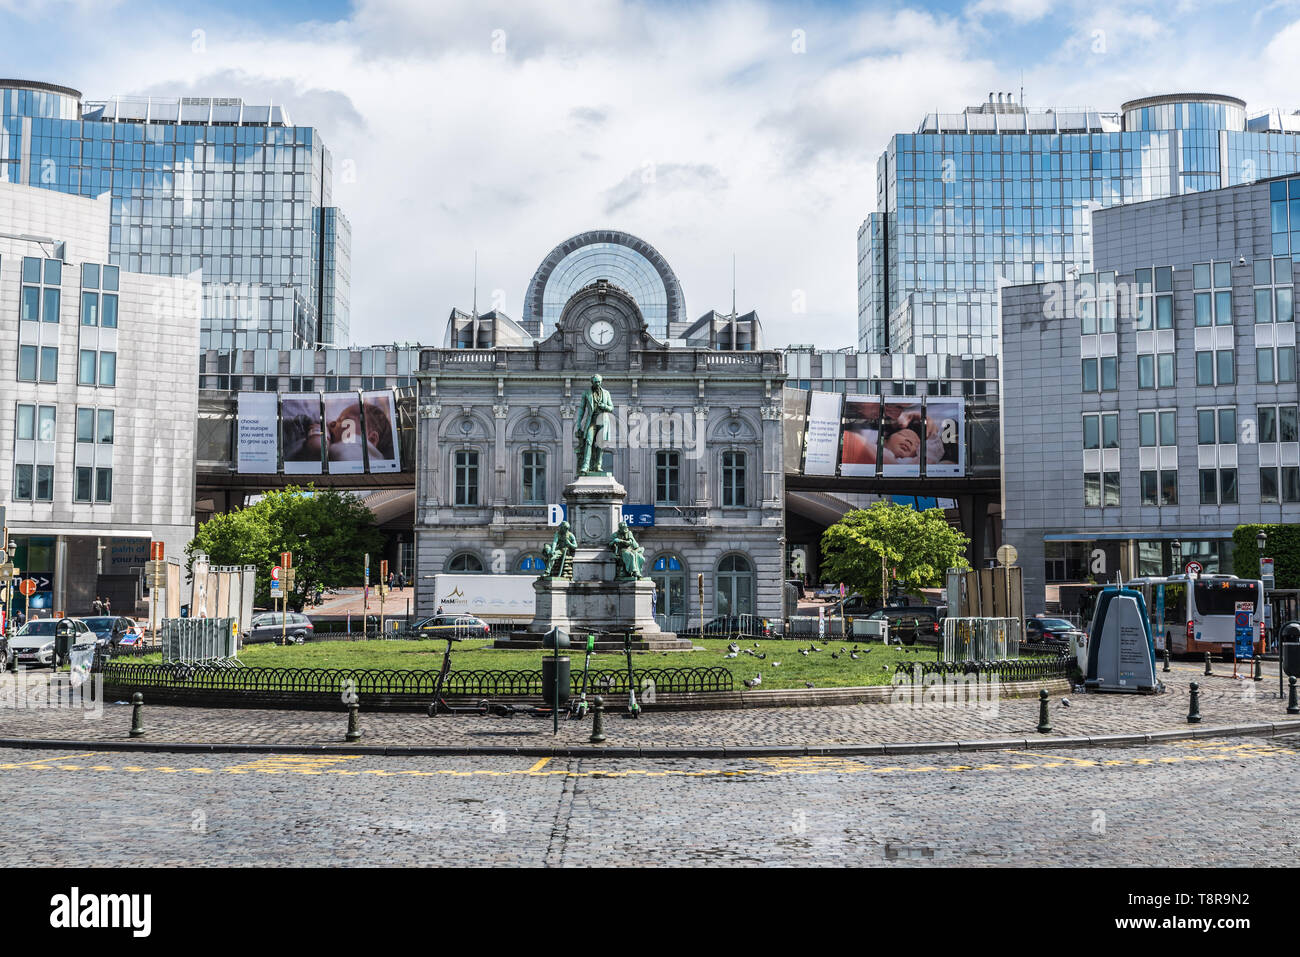 Ixelles, Bruxelles / Belgique - 0427 2019 : la Place du Luxembourg, avec la statue de John Cockerill et le Parlement européen info point Banque D'Images